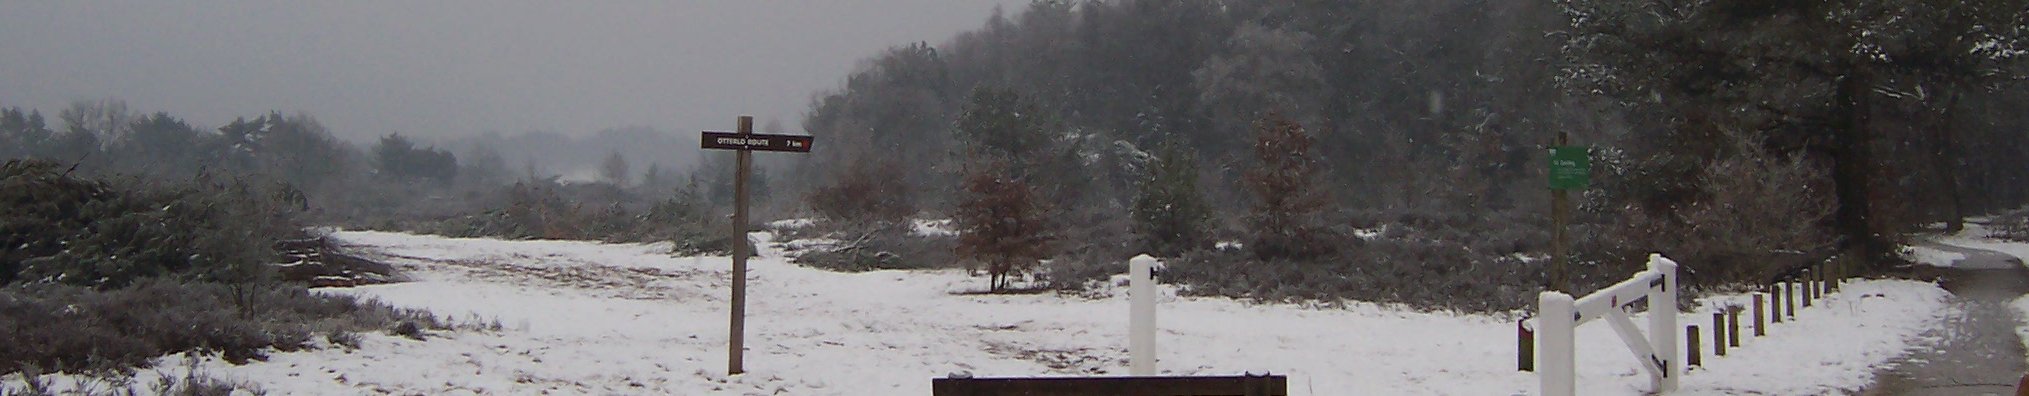 winter 2006, zanding